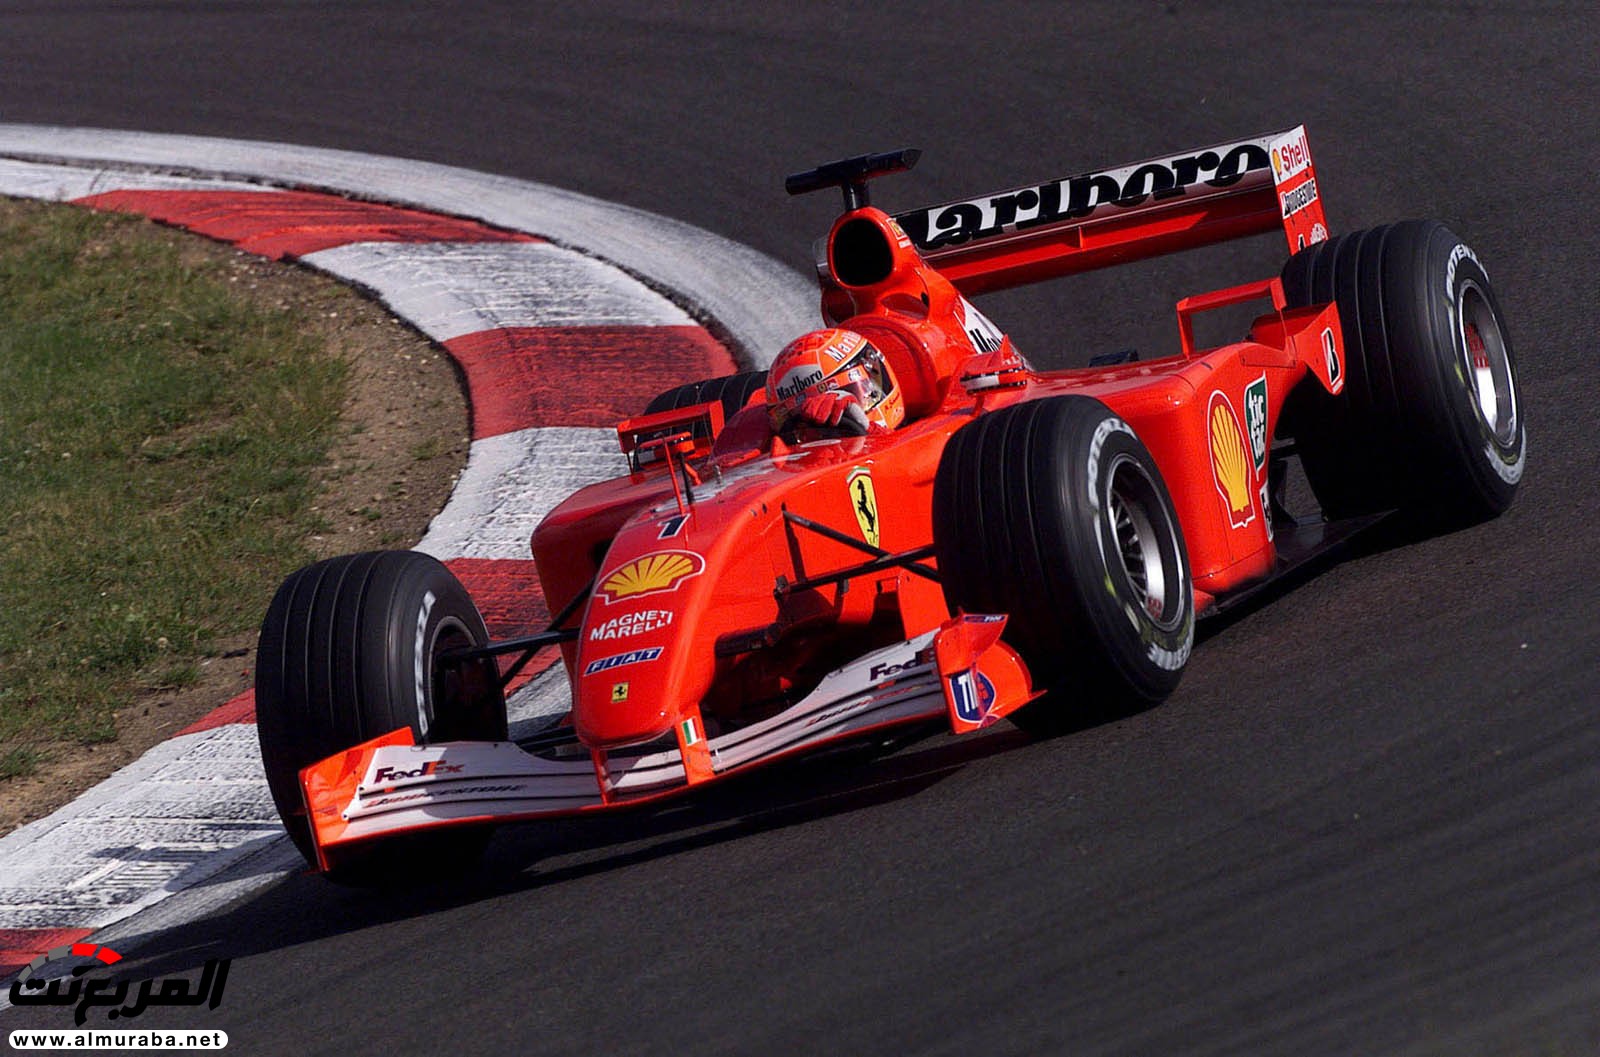 أسطورة فورمولا 1 مايكل شوماخر تباع فيراري F2001 خاصته مقابل 28 مليون ريال 5